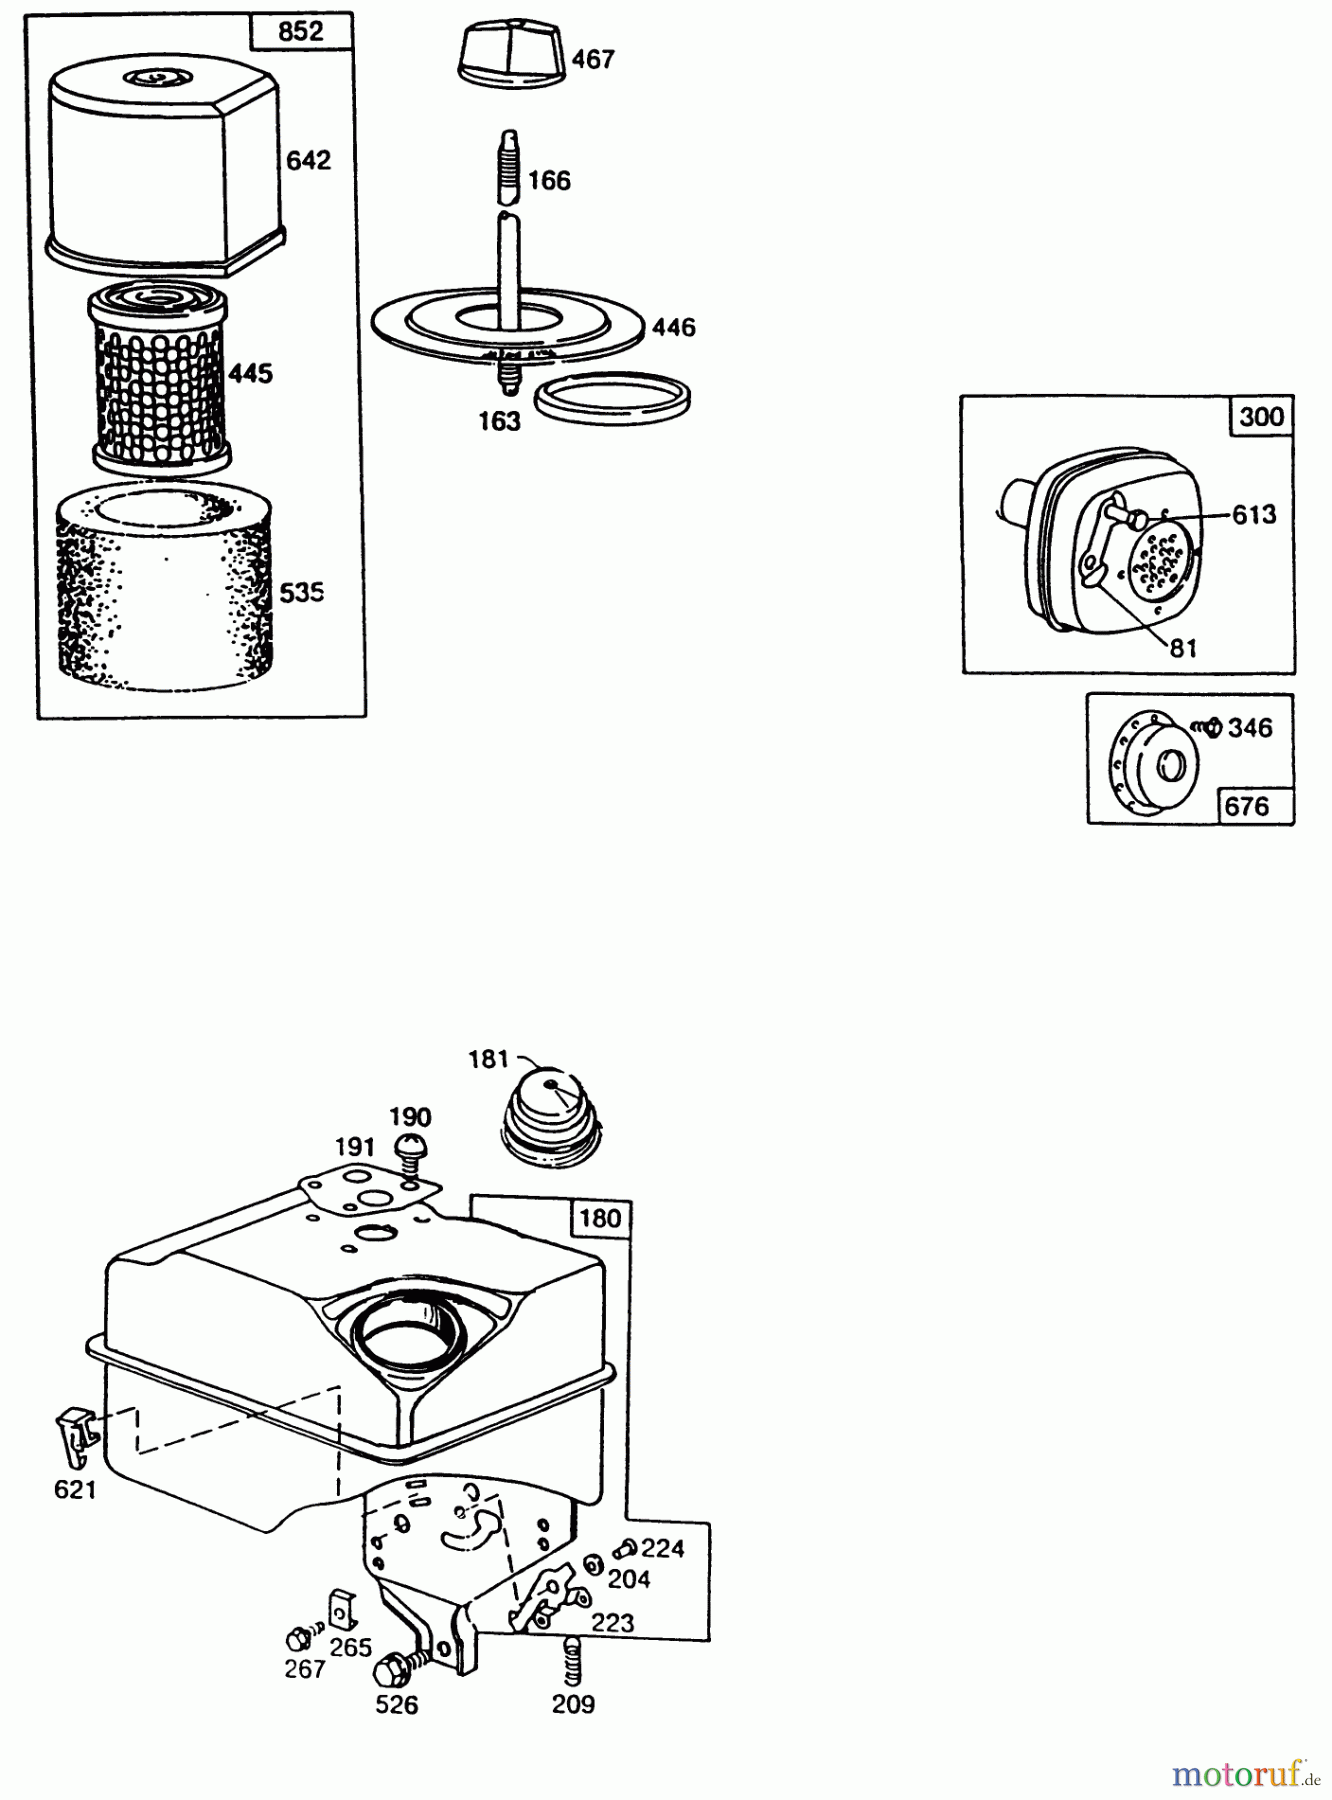  Laubbläser / Laubsauger 62923 - Toro 5 hp Lawn Vacuum (SN: 0000001 - 0999999) (1990) ENGINE BRIGGS & STRATTON MODEL NO. 130202-1640-01 #3